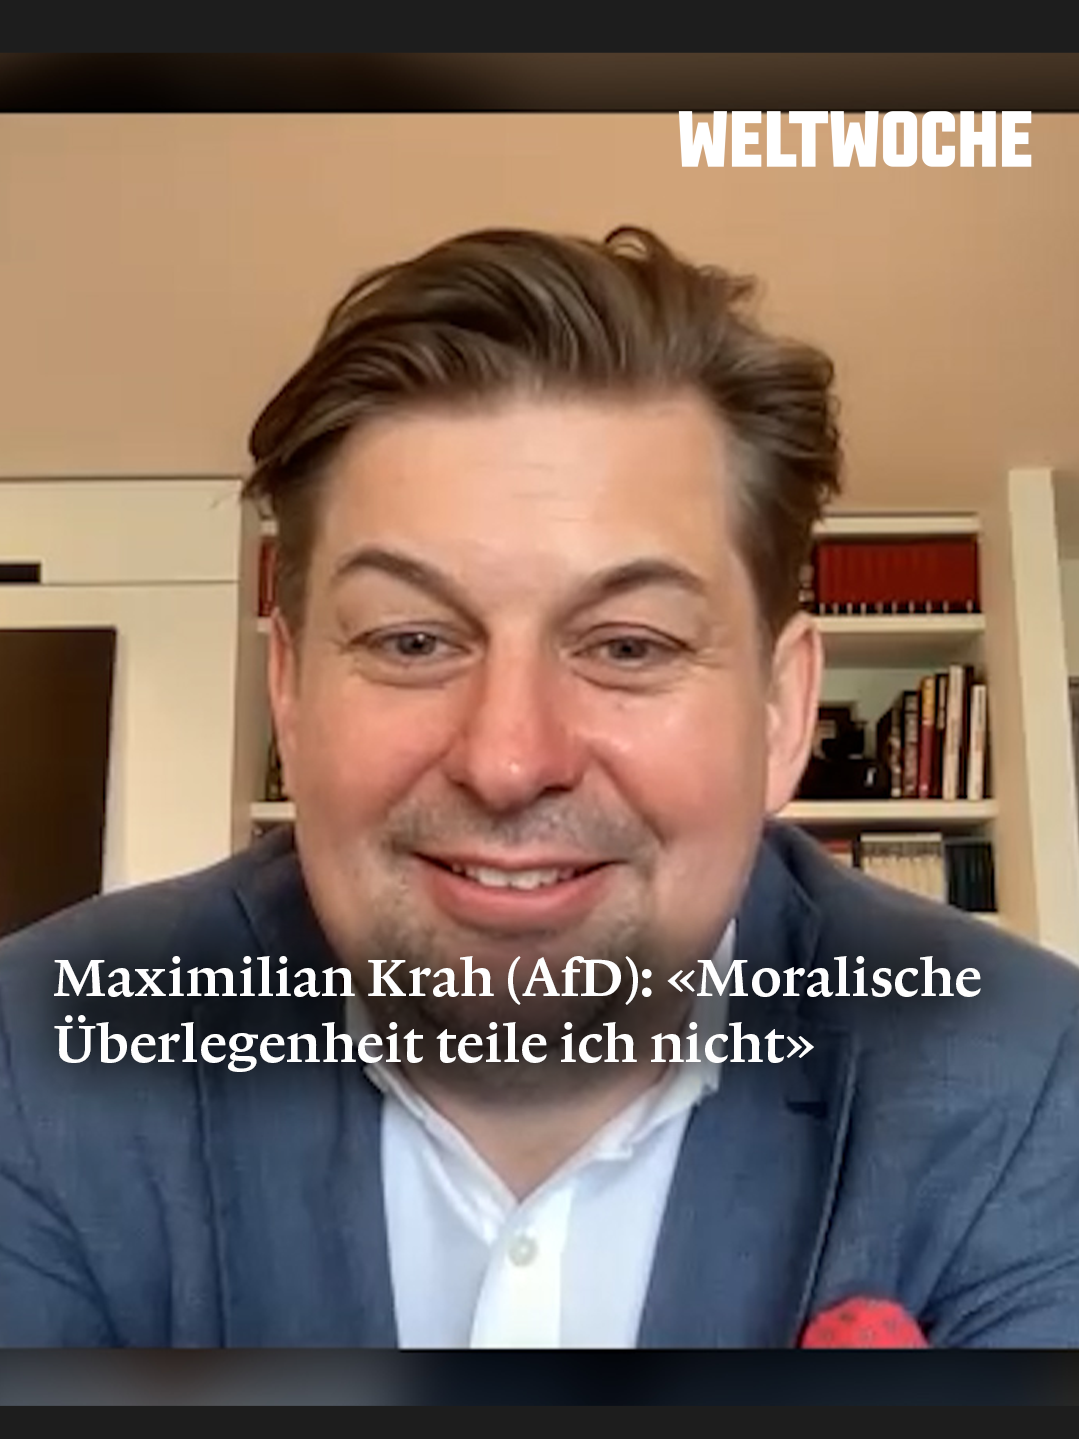 Maximilian Krah (AfD): «Moralische Überlegenheit teile ich nicht». Das ganze Interview jetzt auf weltwoche.de! #weltwoche #rogerkoeppel #AfD #MaximilianKrah #deutschland